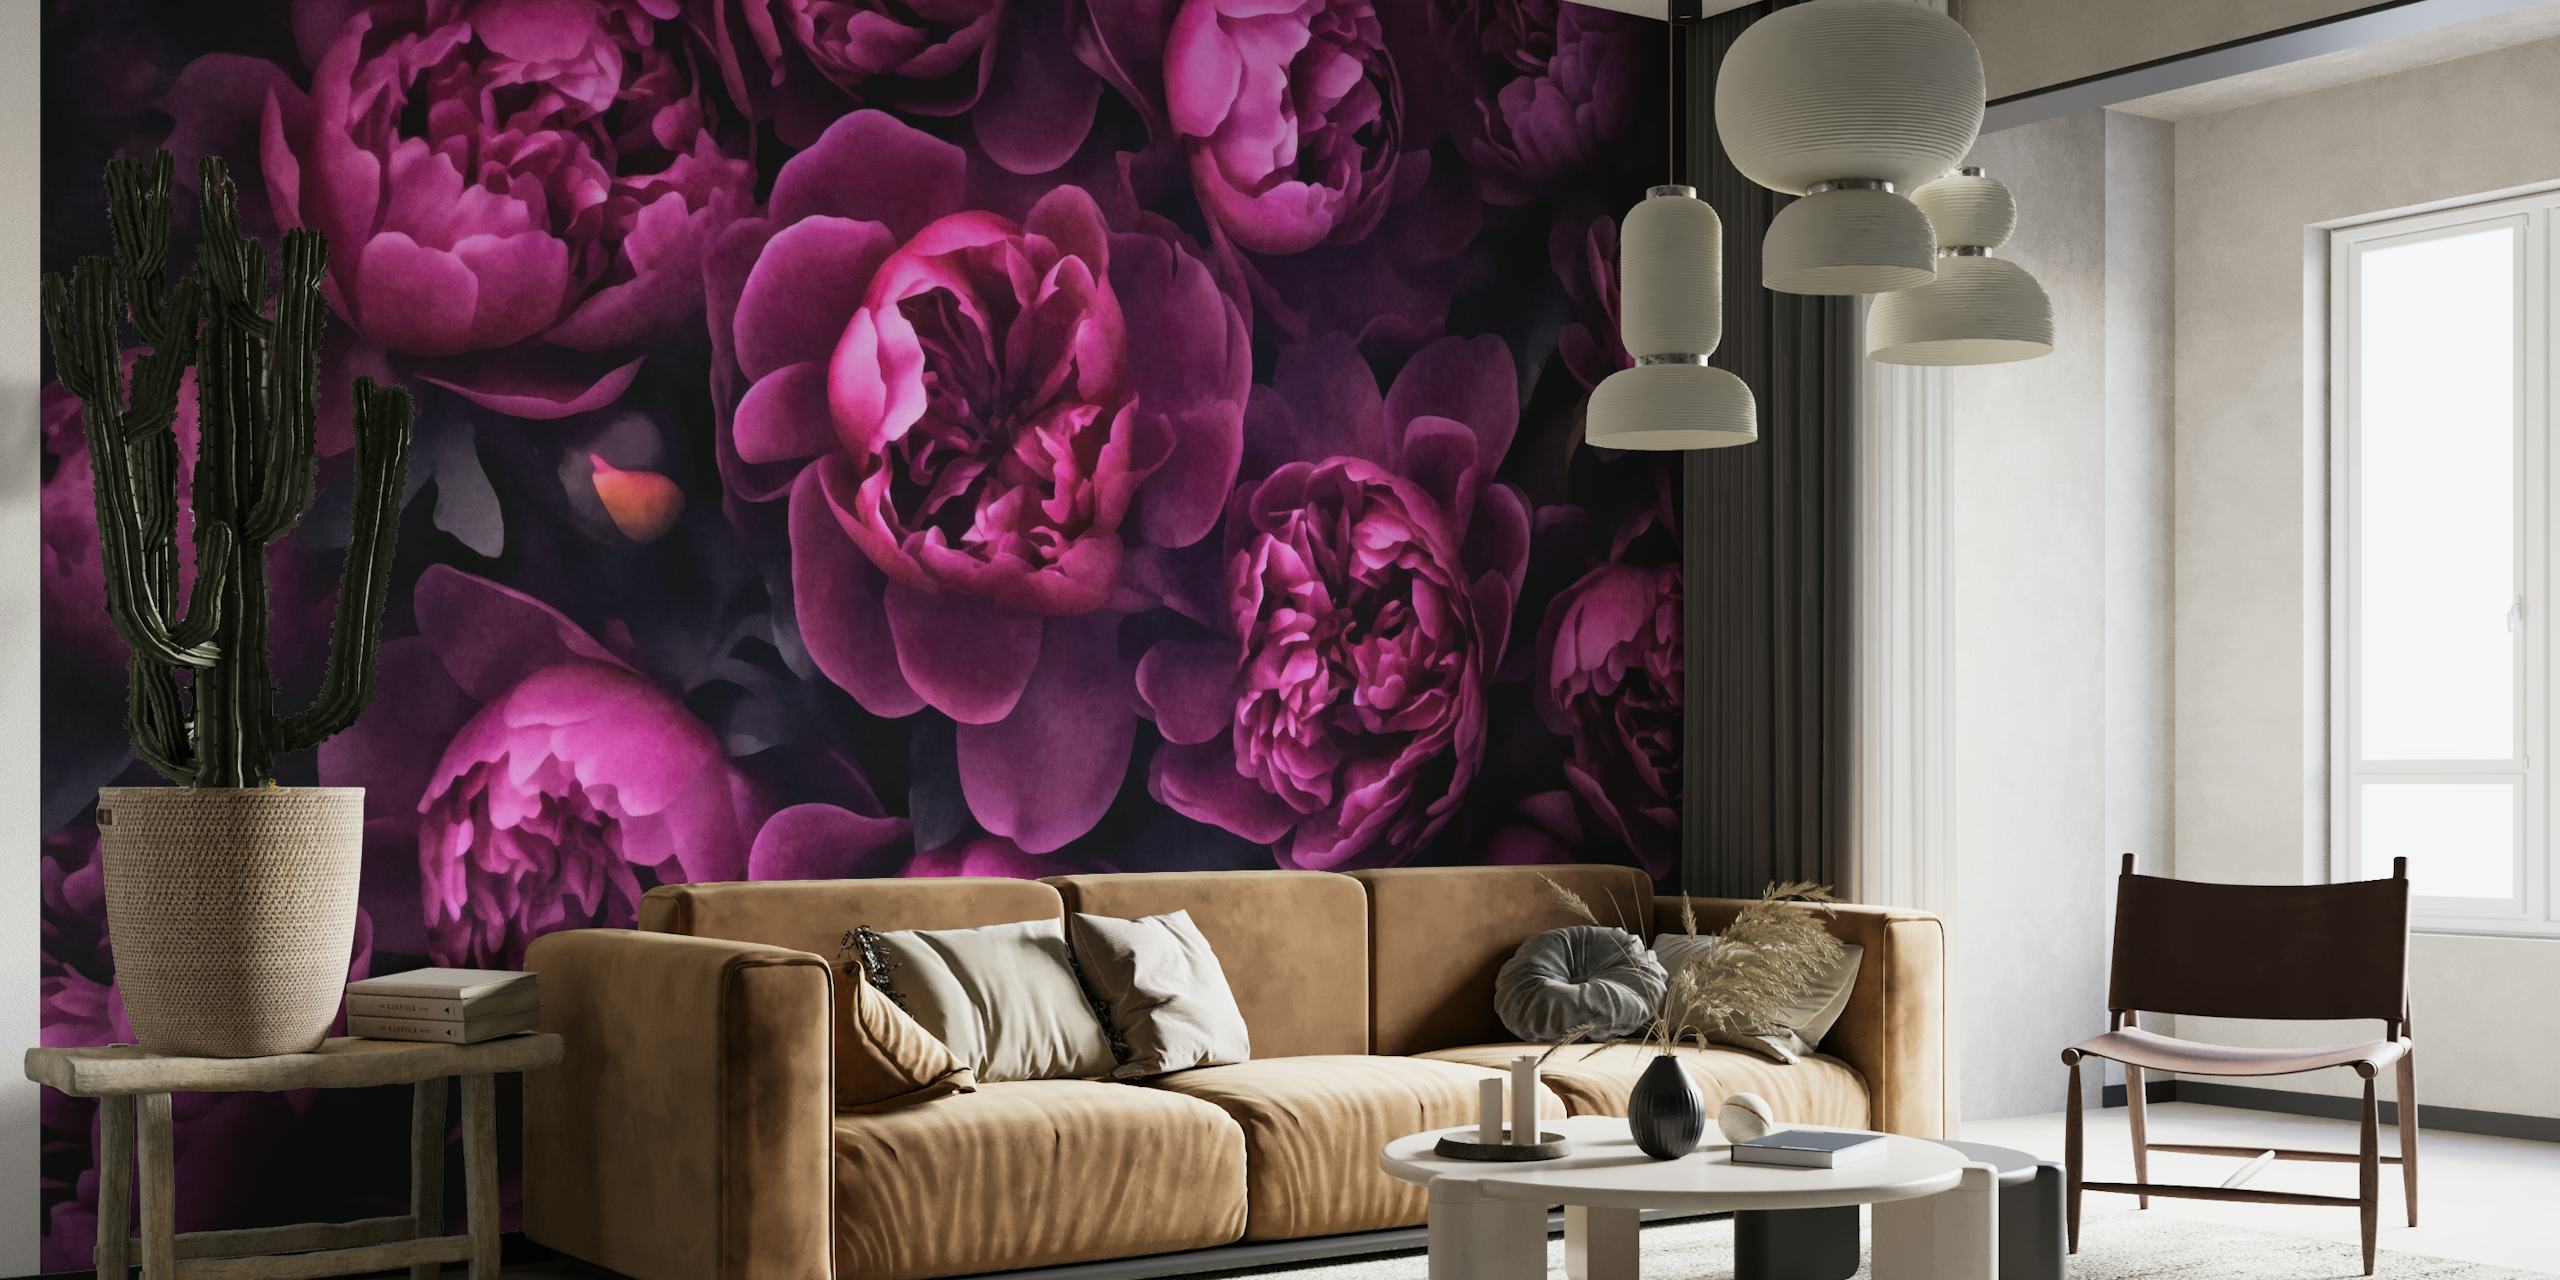 Luksuriøs pink pæon-vægmaleri med en mørk, elegant baggrund